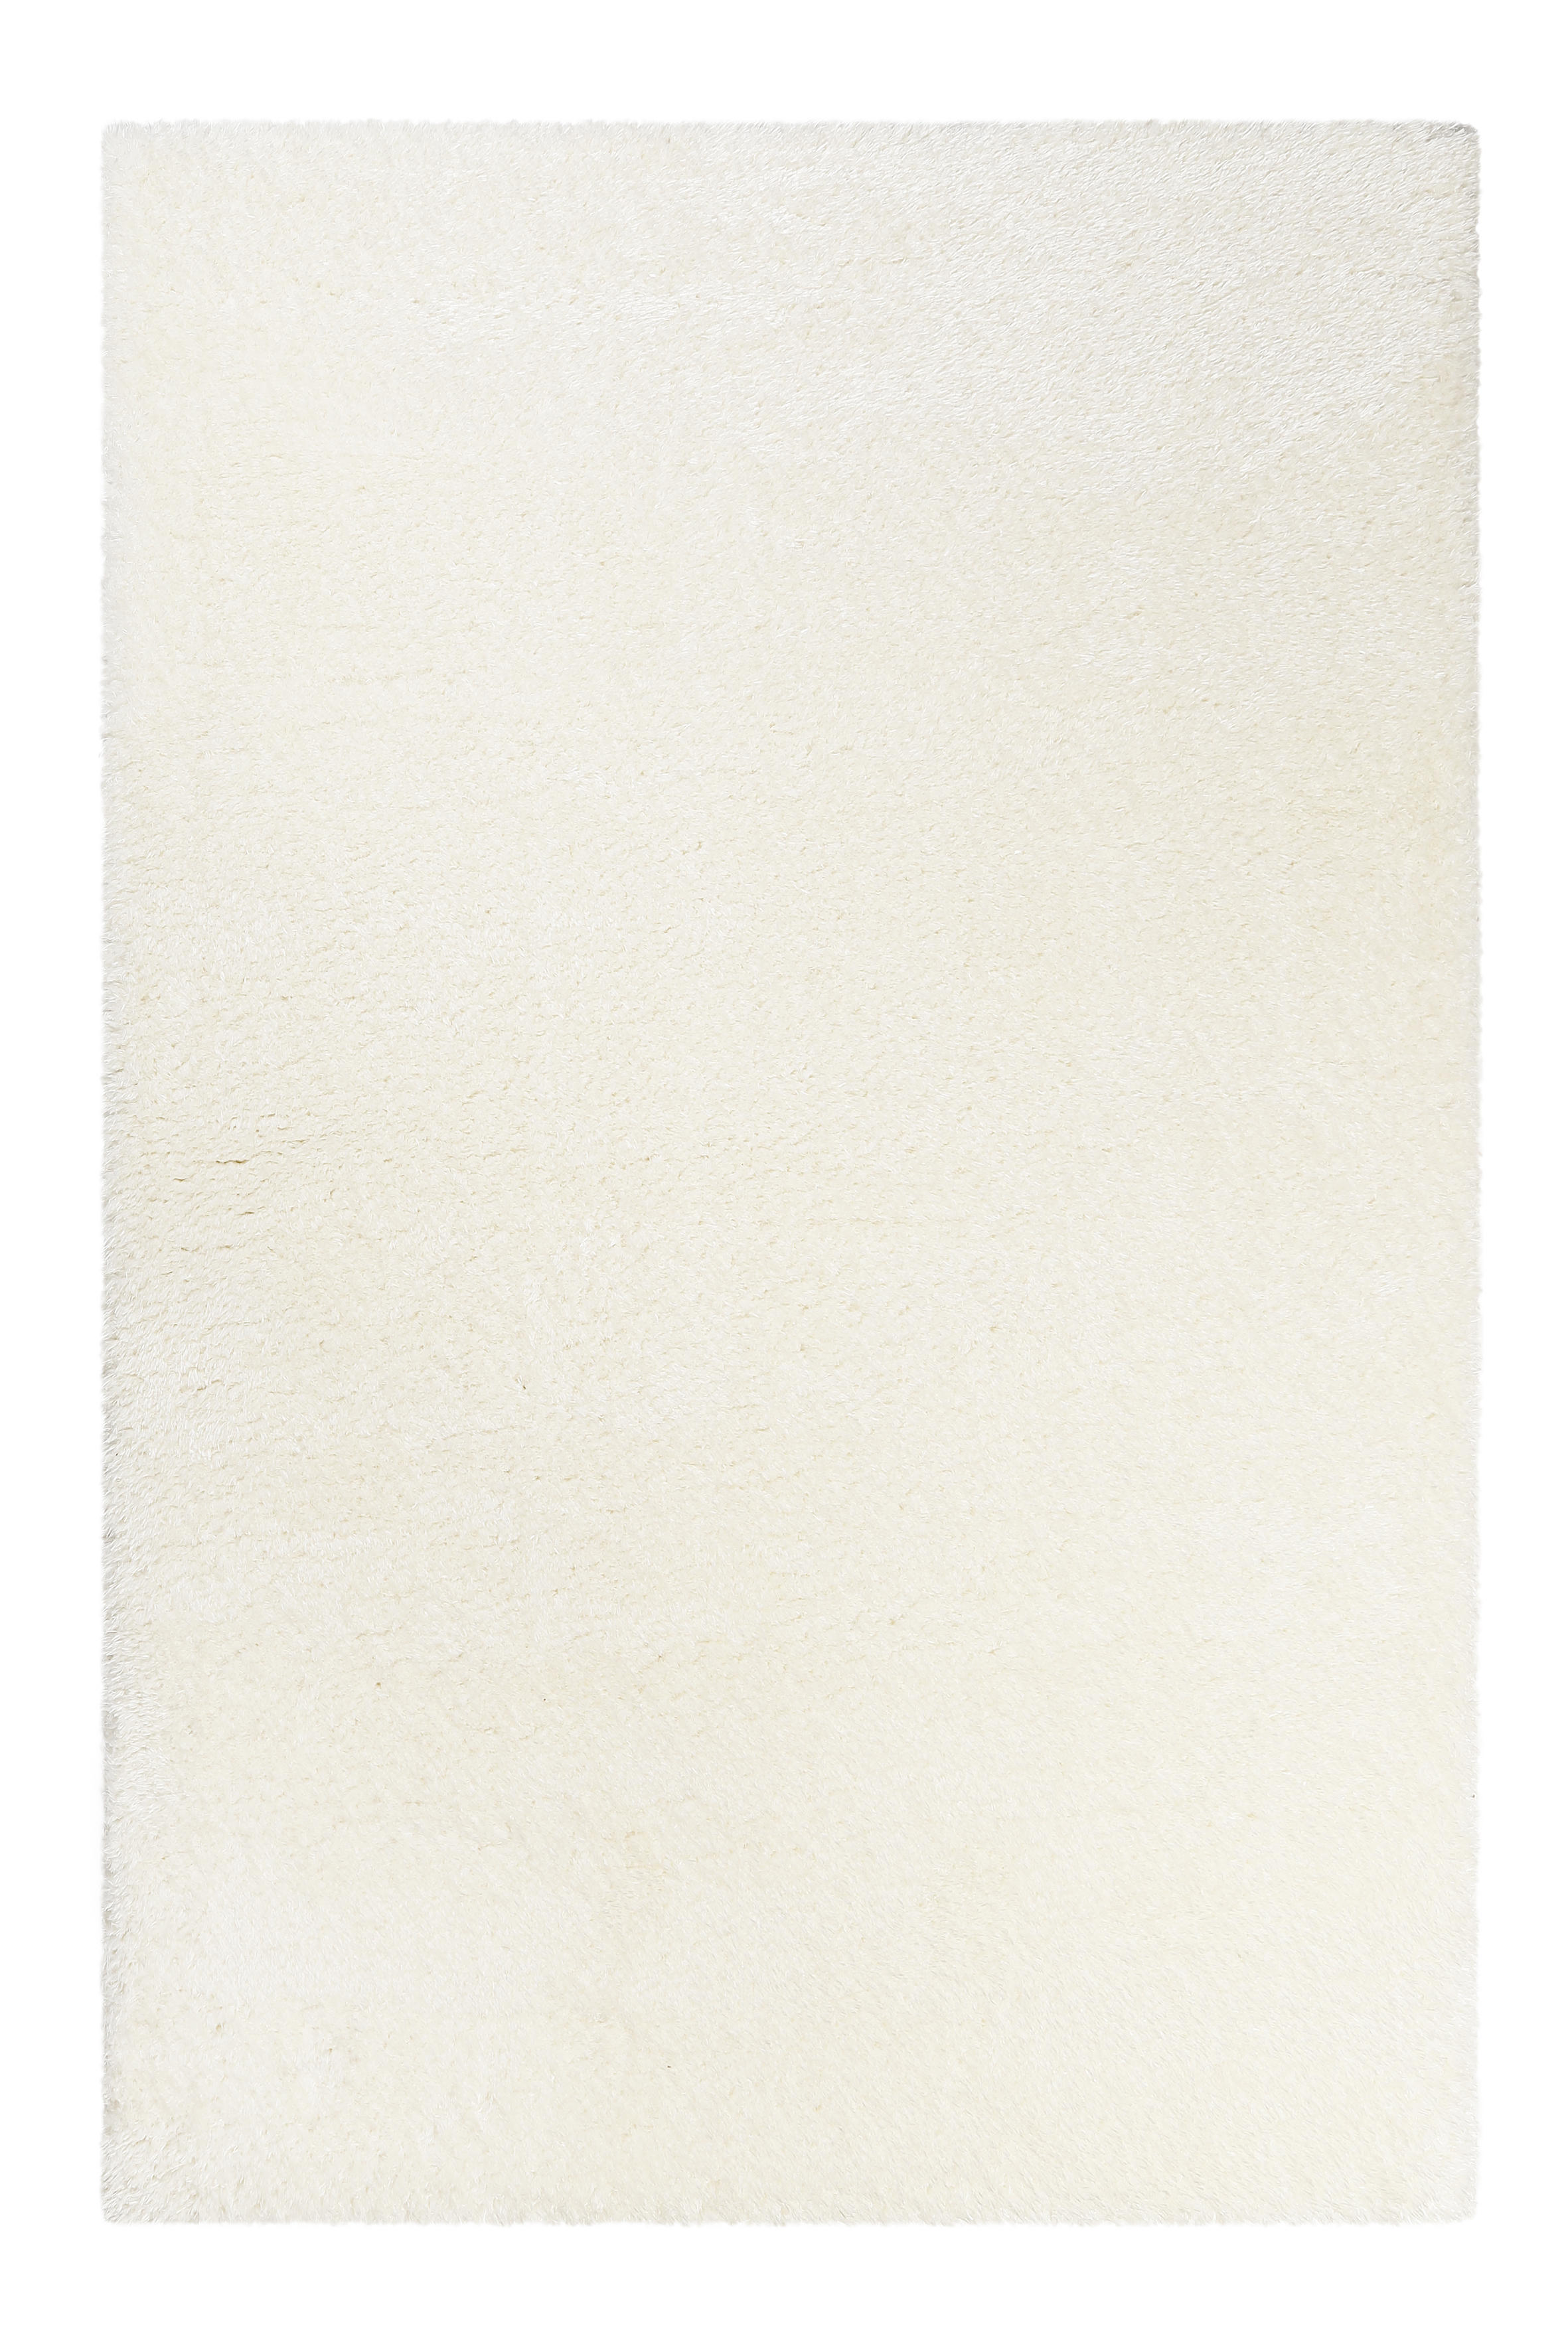 HOCHFLORTEPPICH  120/170 cm  gewebt  Weiß   - Weiß, KONVENTIONELL, Textil (120/170cm) - Novel